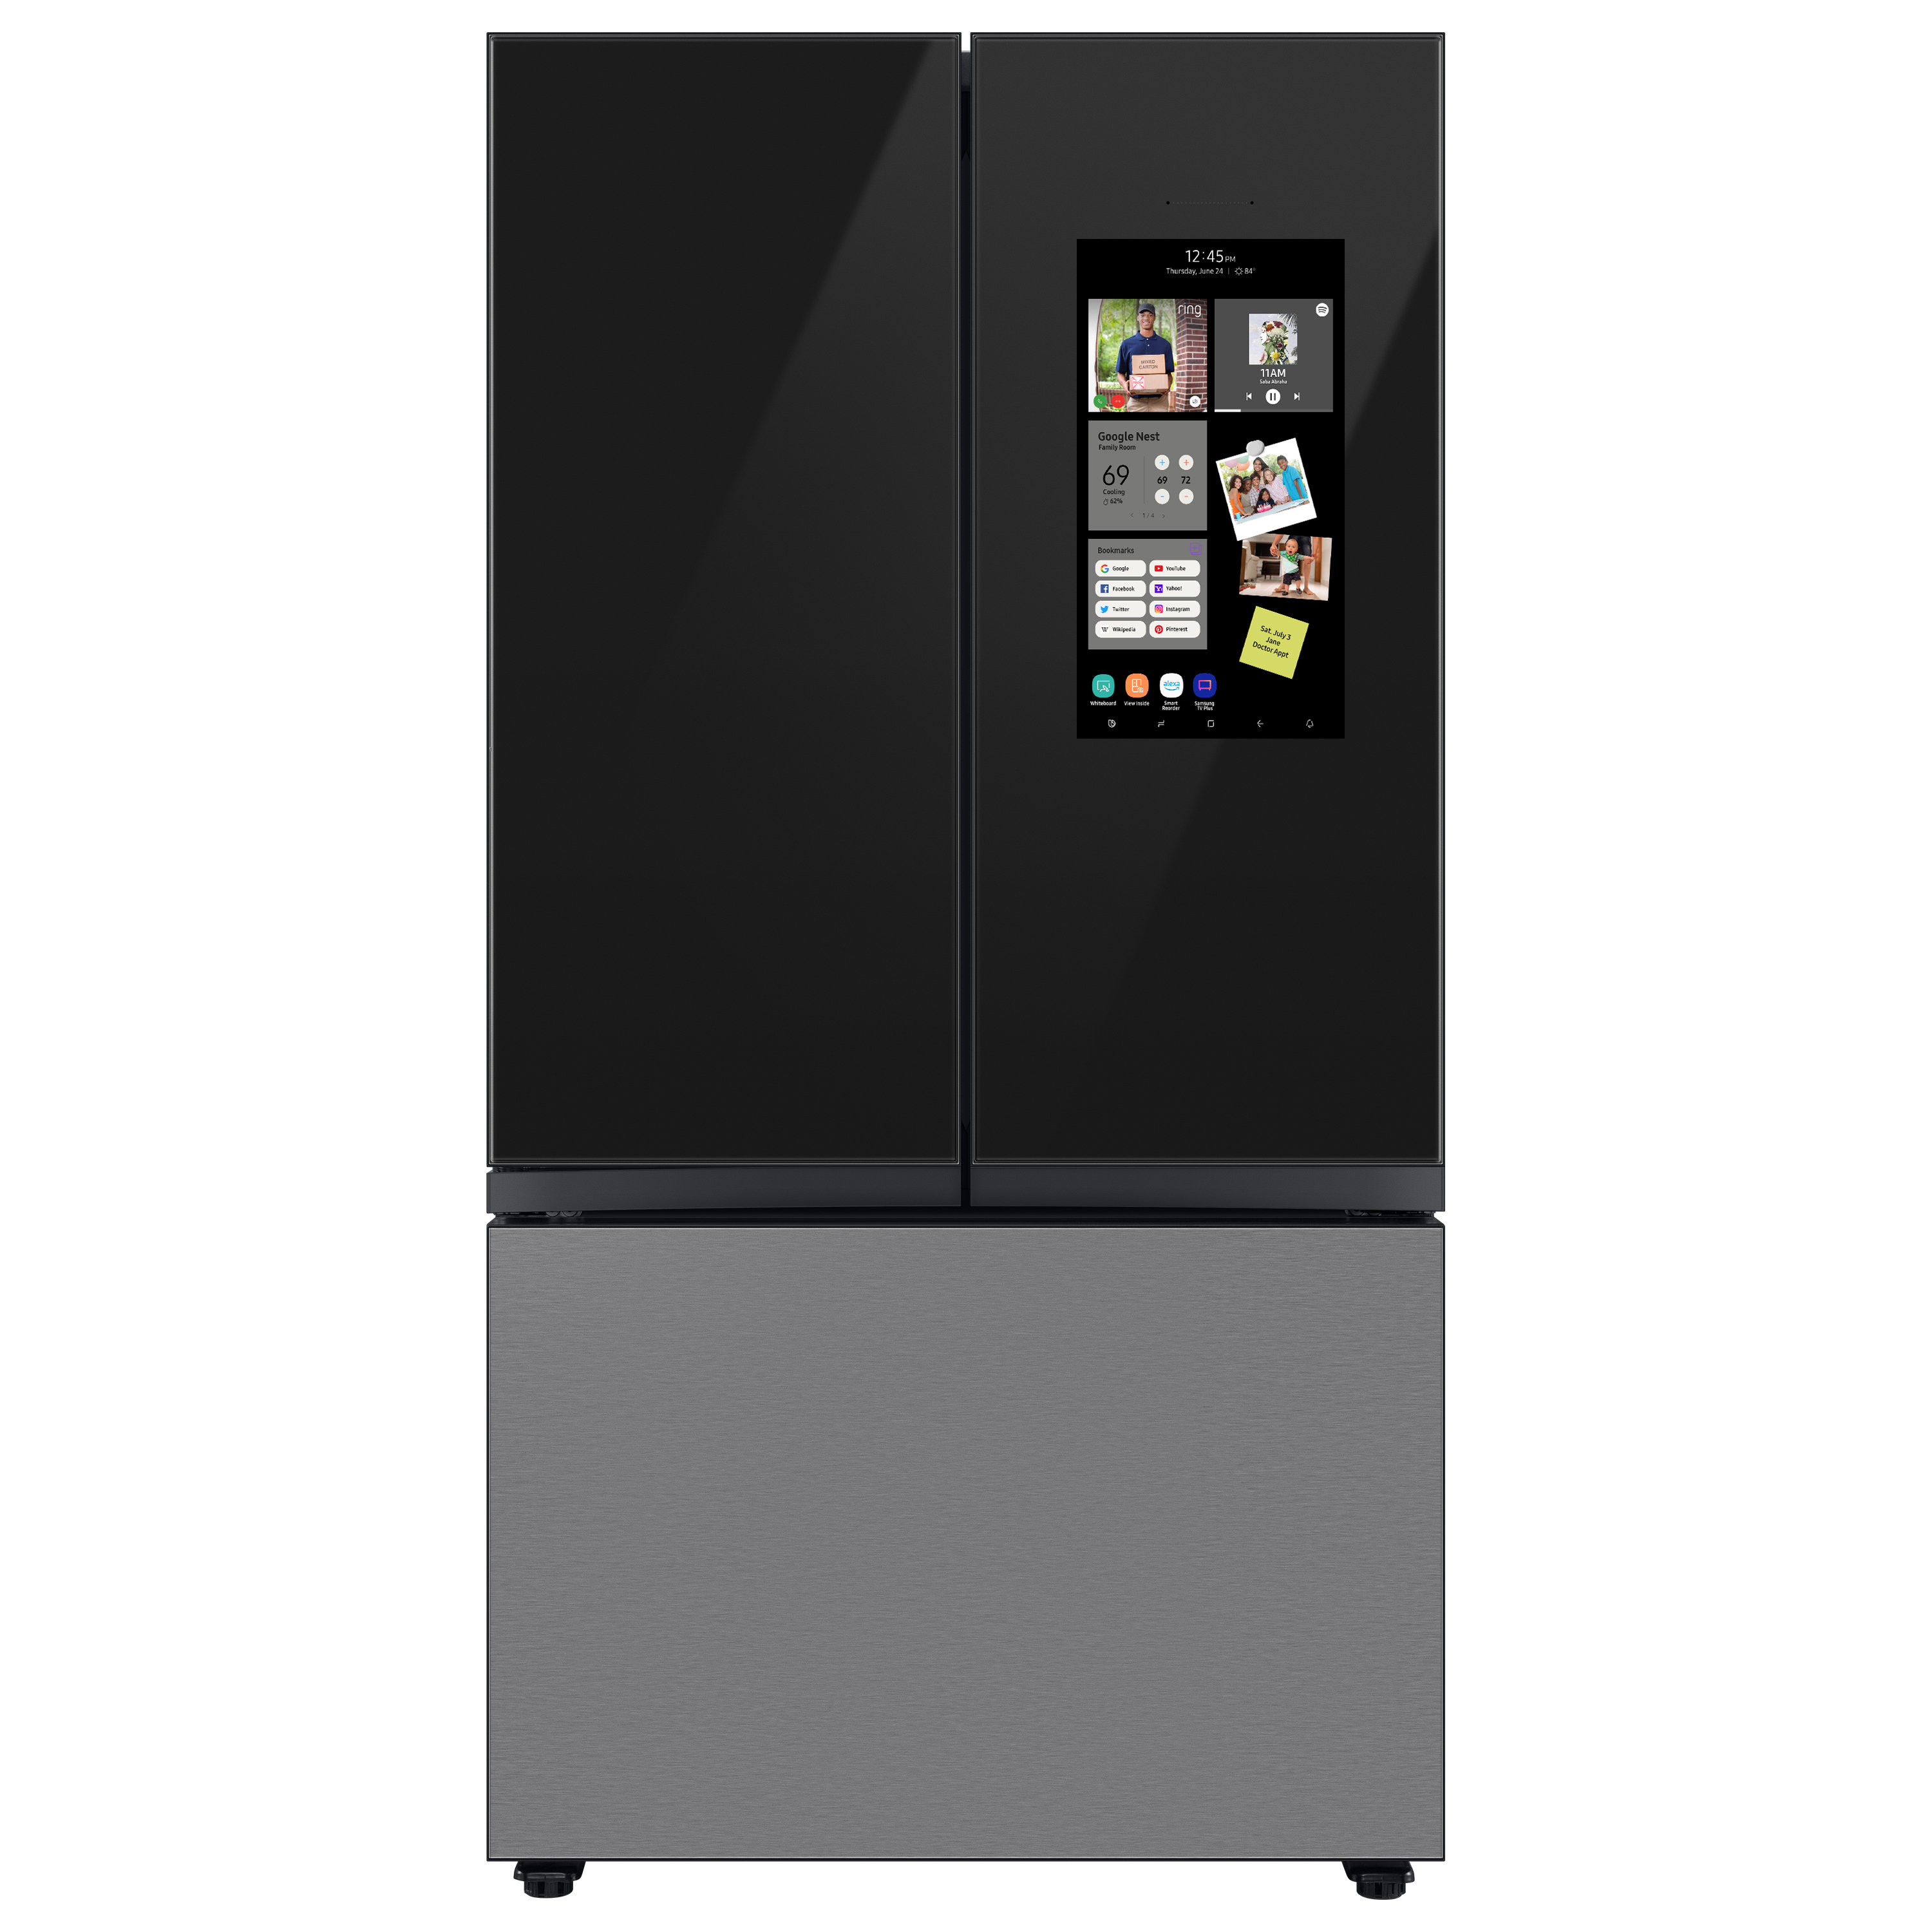 https://assets.wfcdn.com/im/05866385/compr-r85/2205/220588543/bespoke-3-door-french-door-refrigerator-24-cu-ft-with-family-hub.jpg